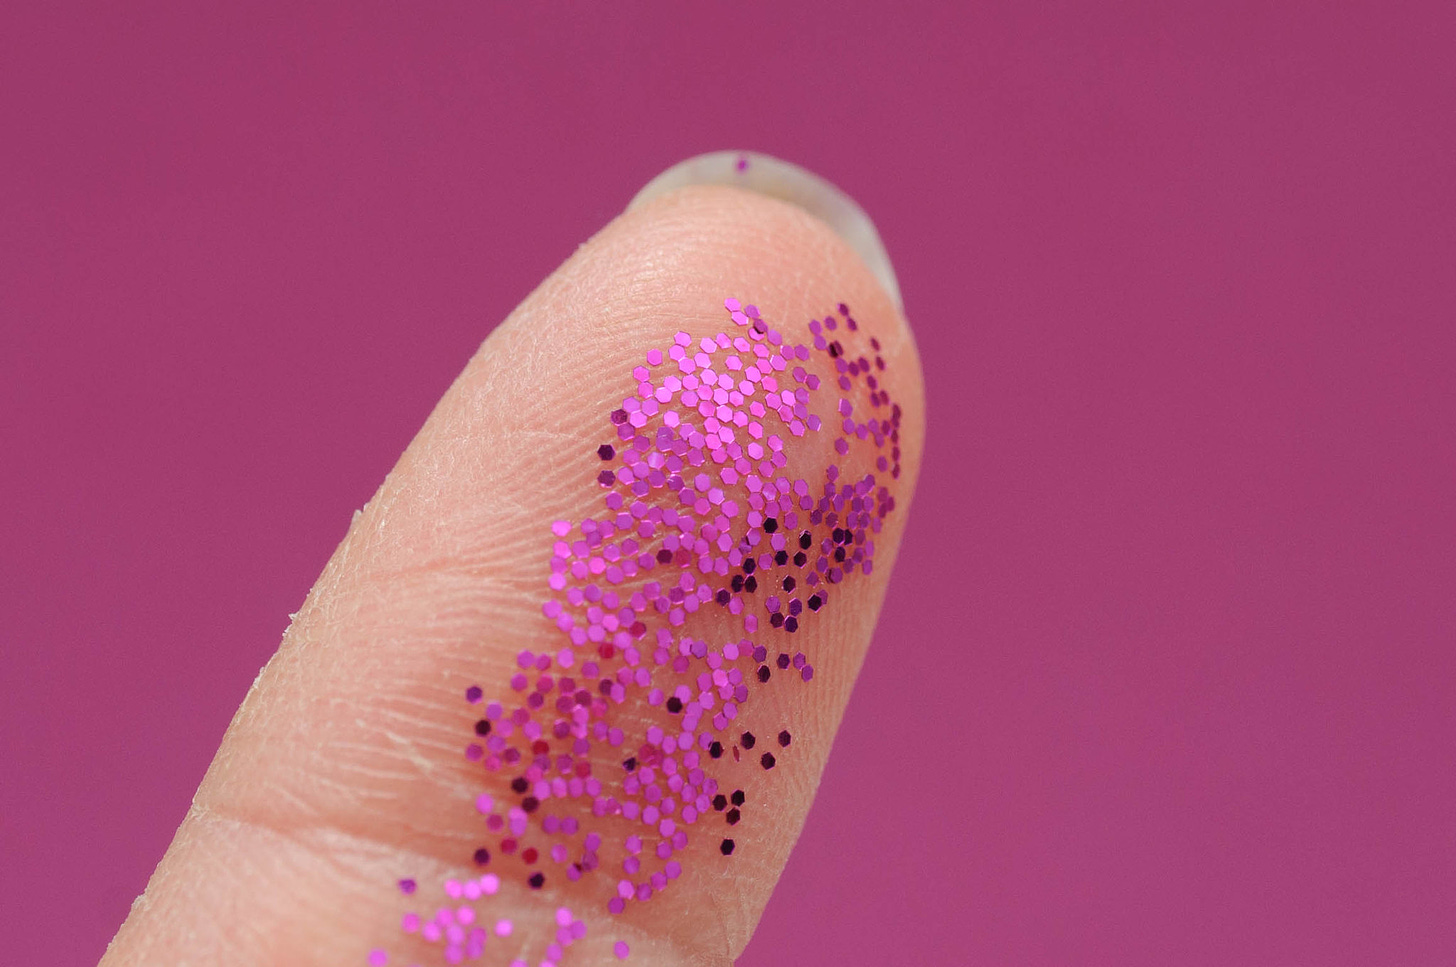 Fingertip with glitter